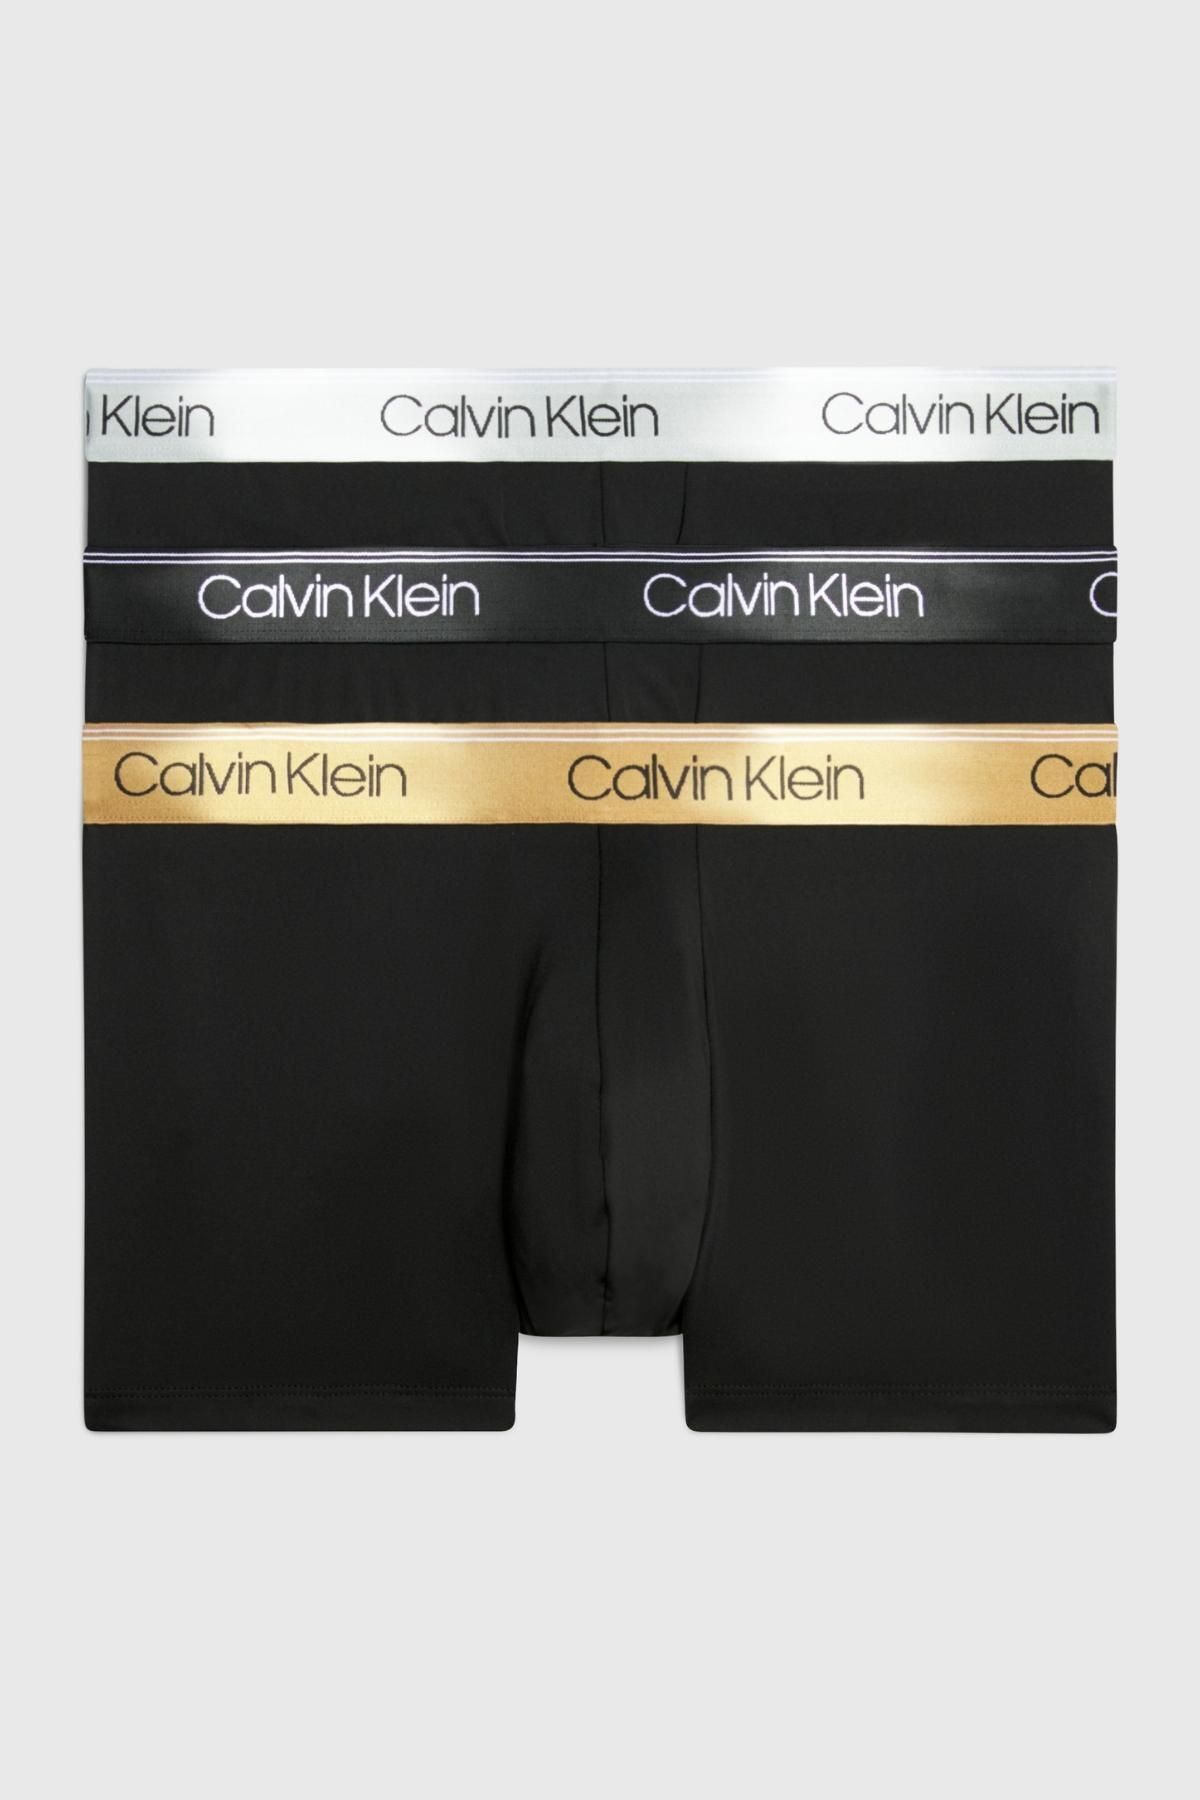 Calvin Klein Erkek Marka Logolu Elastik Bantlı Günlük Kullanıma Uygun Siyah-siyah-siyah Boxer 000nb2569a-gf0